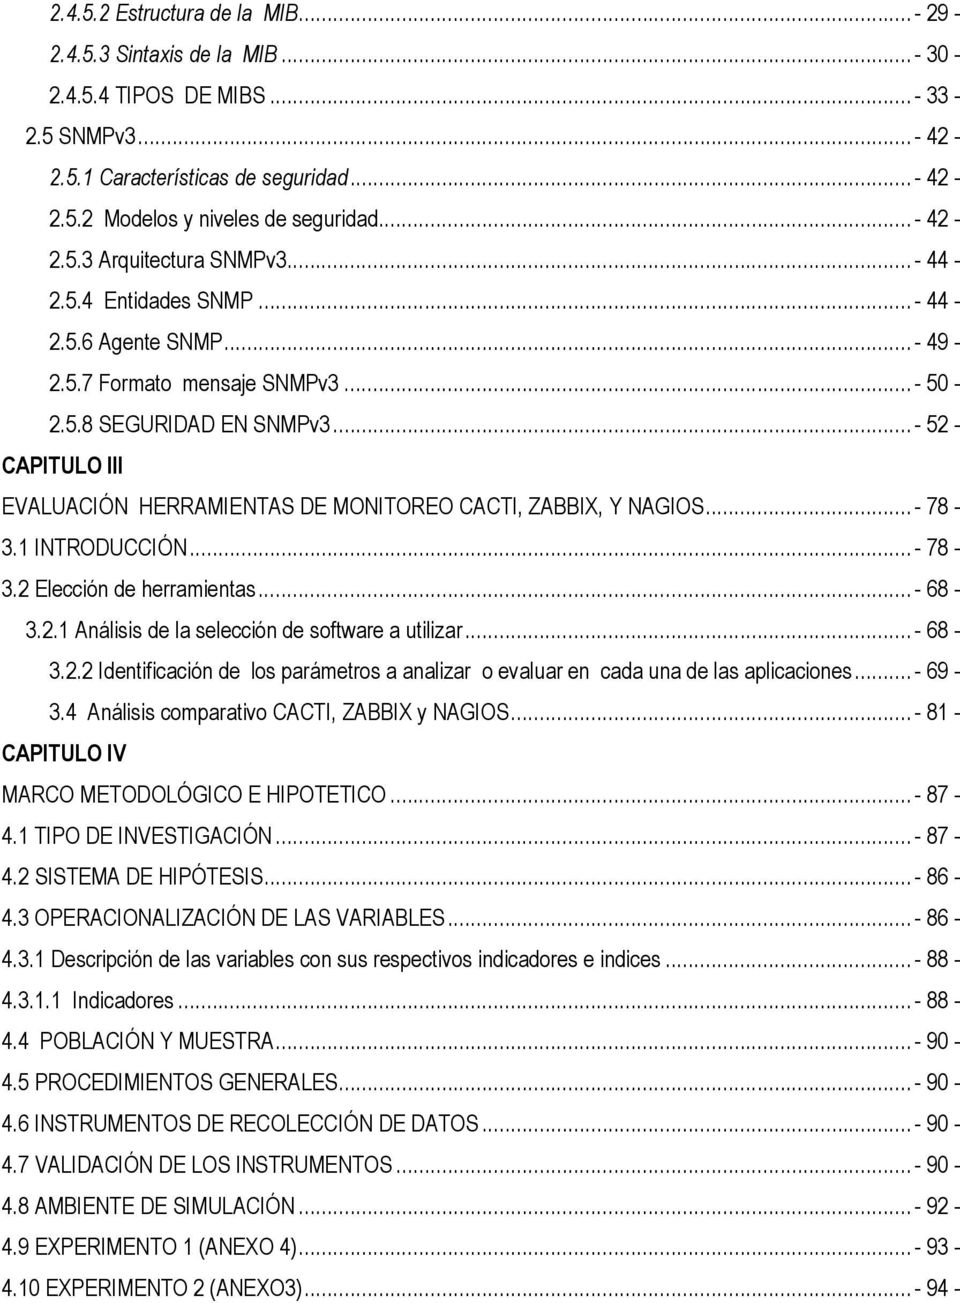 .. - 52 - CAPITULO III EVALUACIÓN HERRAMIENTAS DE MONITOREO CACTI, ZABBIX, Y NAGIOS... - 78-3.1 INTRODUCCIÓN... - 78-3.2 Elección de herramientas... - 68-3.2.1 Análisis de la selección de software a utilizar.